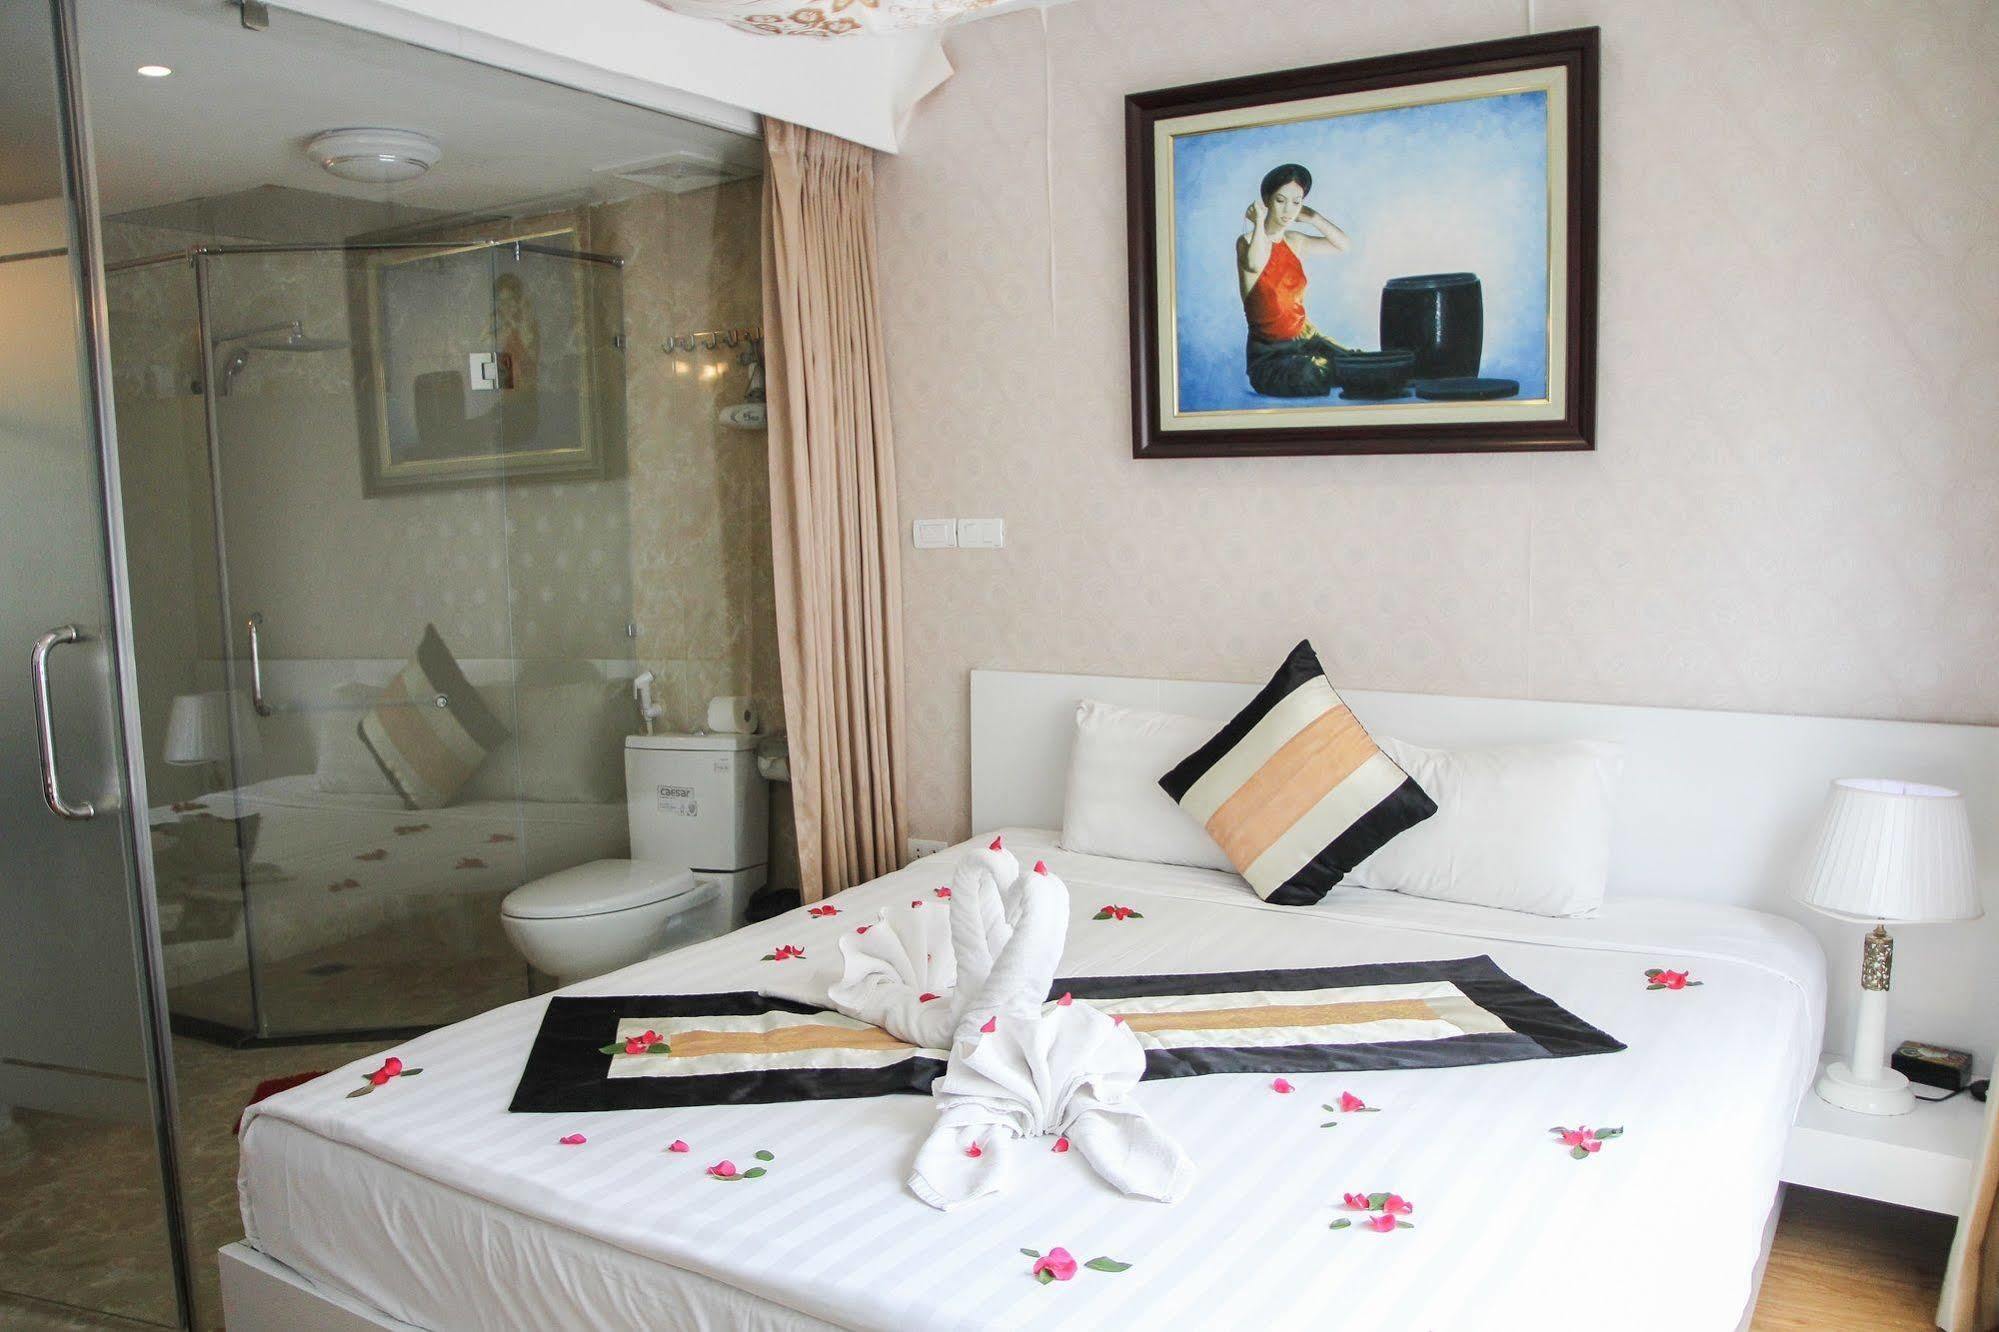 هانوي Splendid Star Suites Hotel المظهر الخارجي الصورة